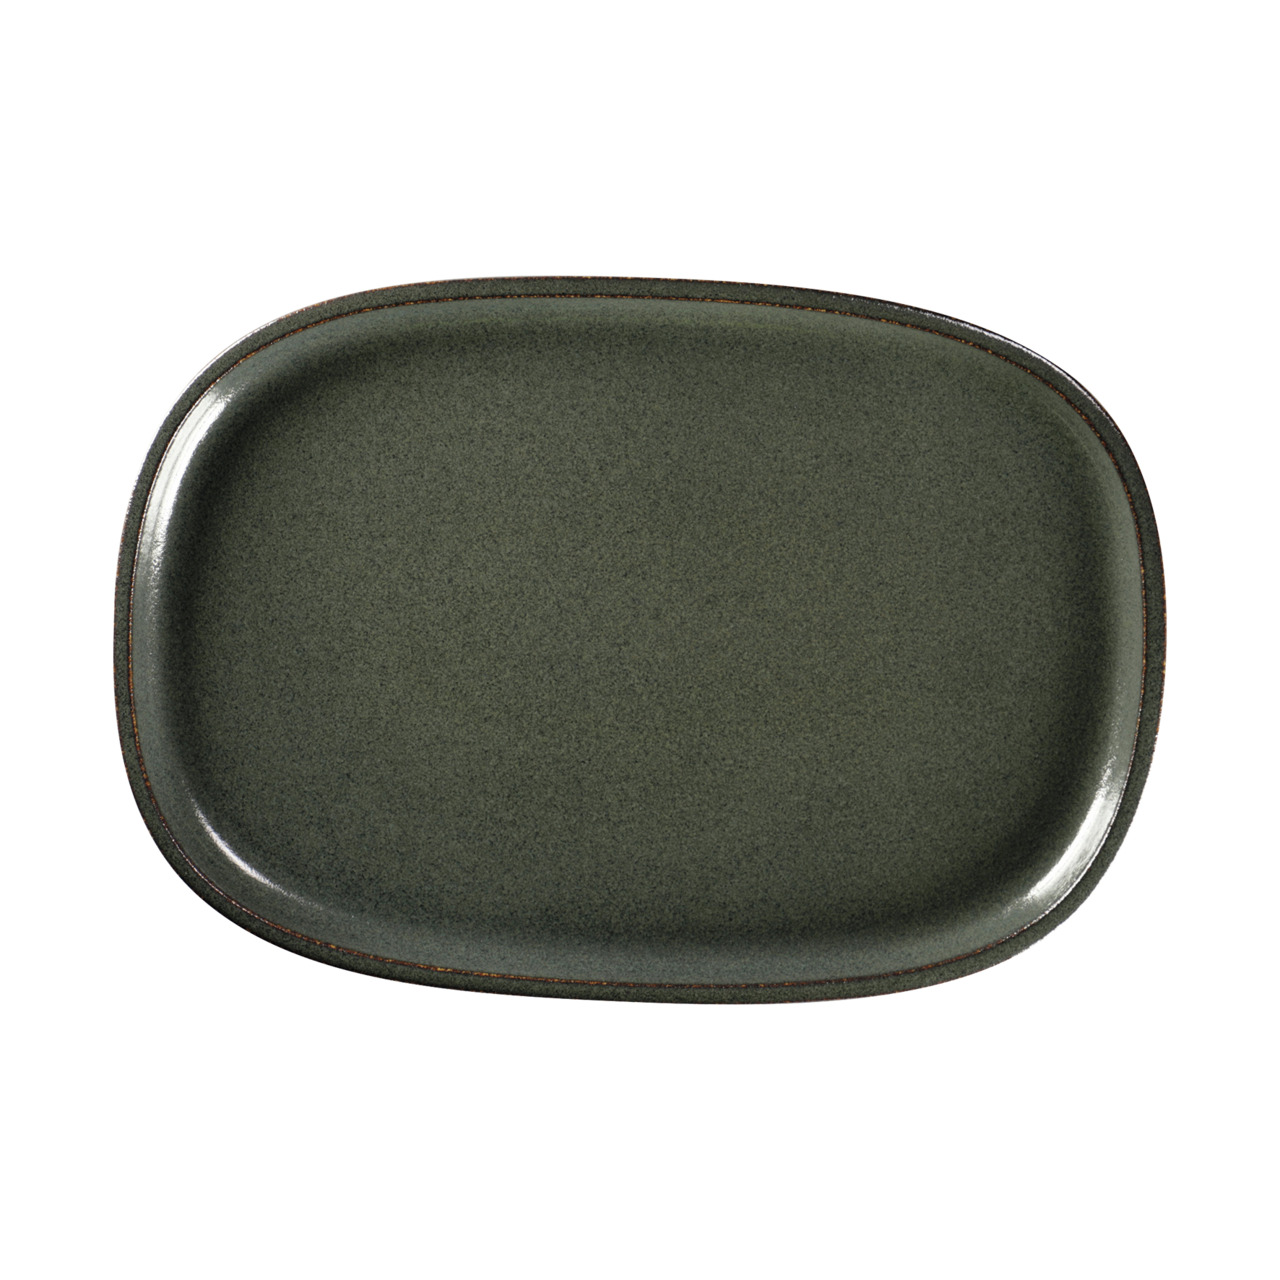 Ease, Platte oval flach 332 x 230 mm caldera green